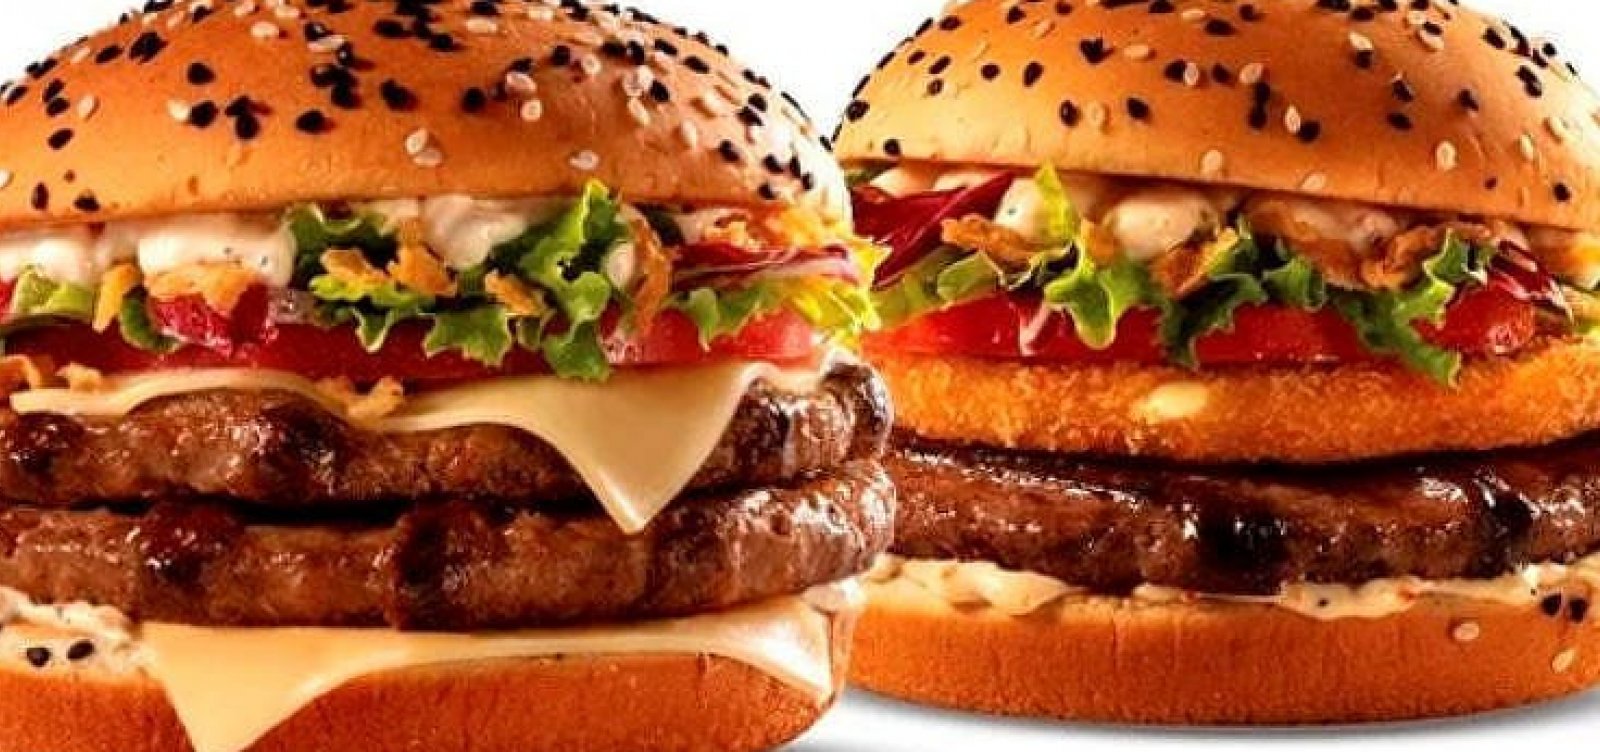 Senado vai debater ‘hambúrguer fake’ de McDonald's e Burger King